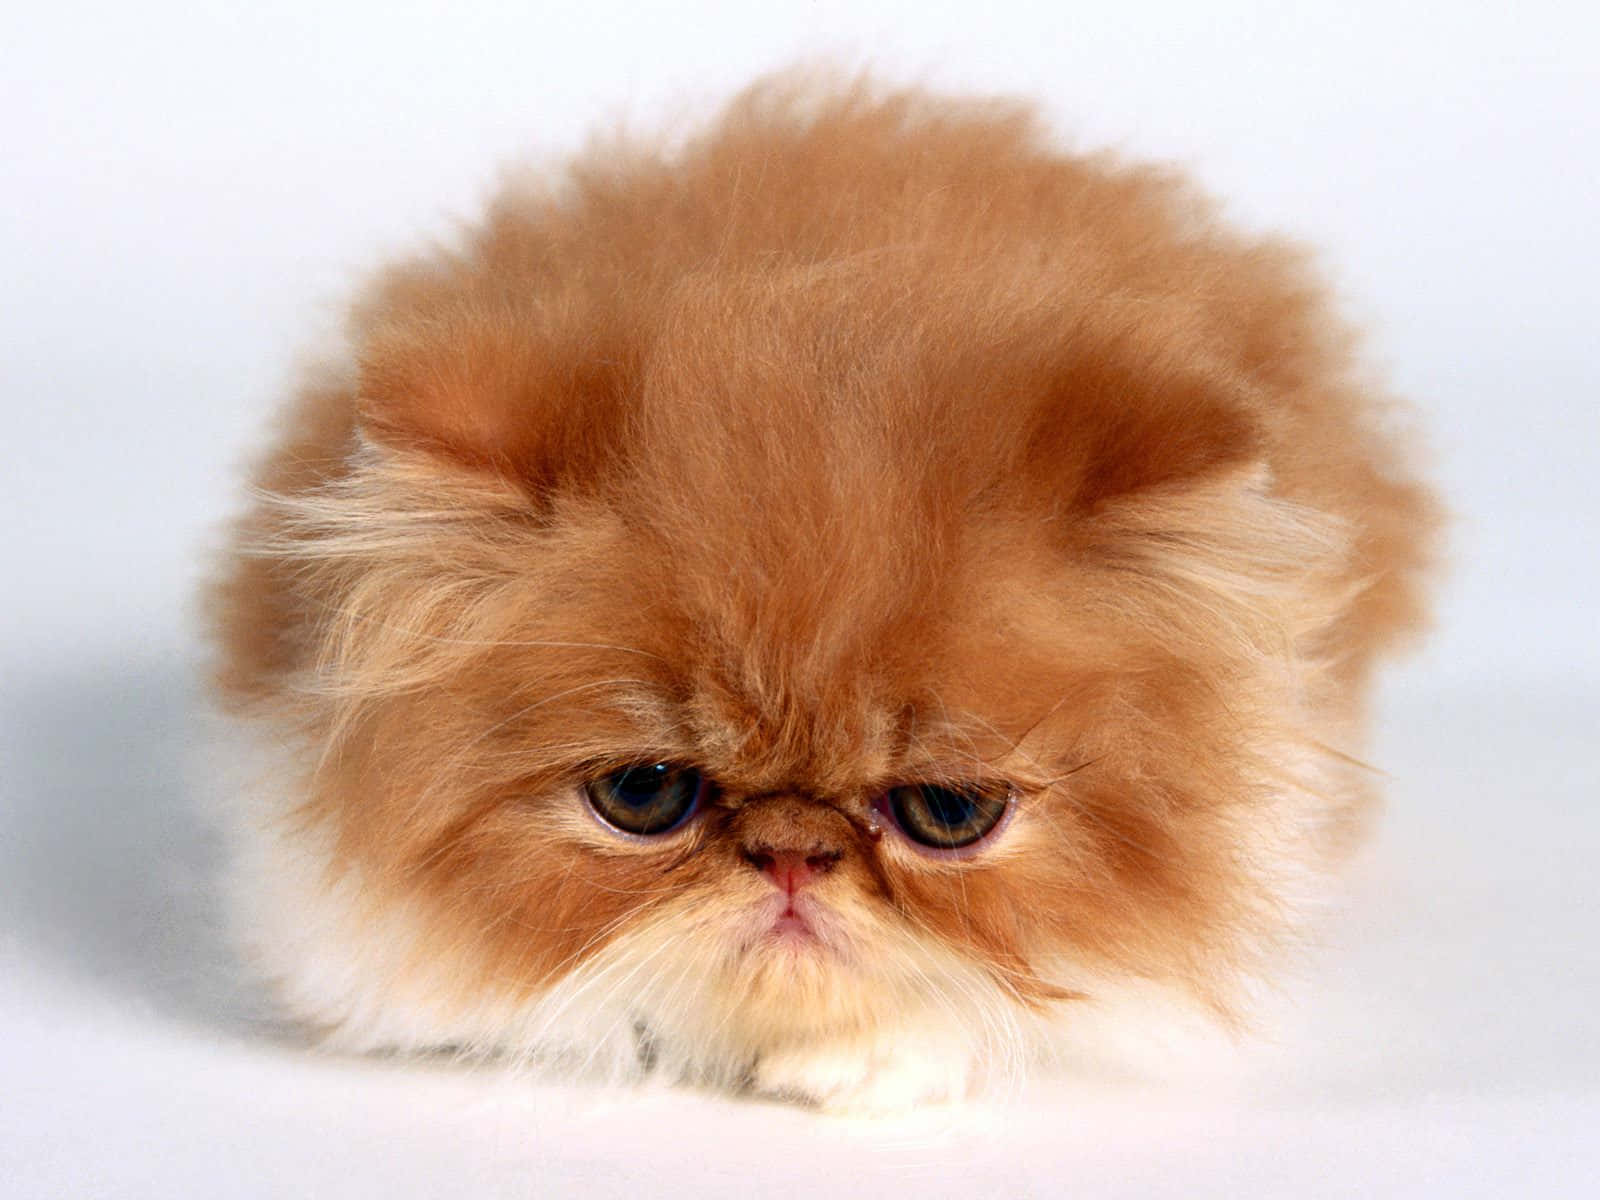 grumpy kitten no